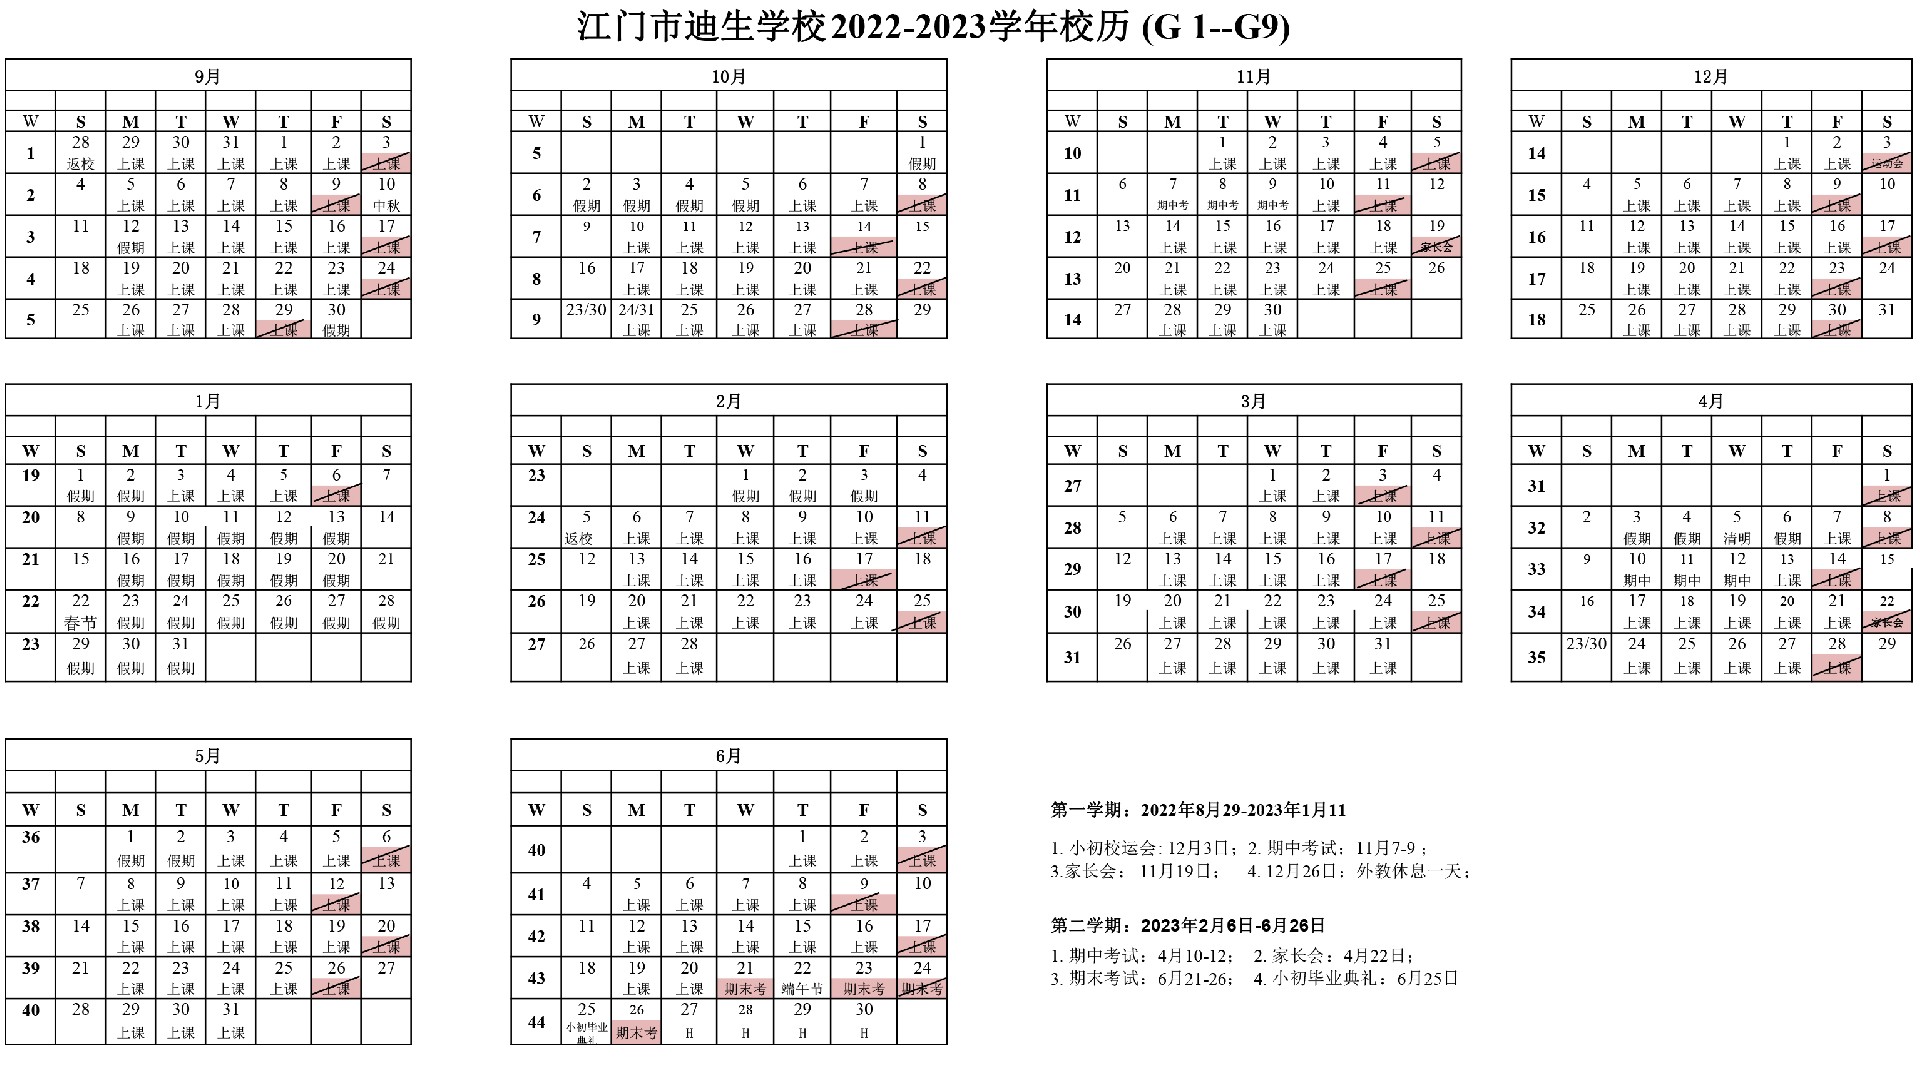 中文版校历G1-G9 2022-2023 校历(2.jpg